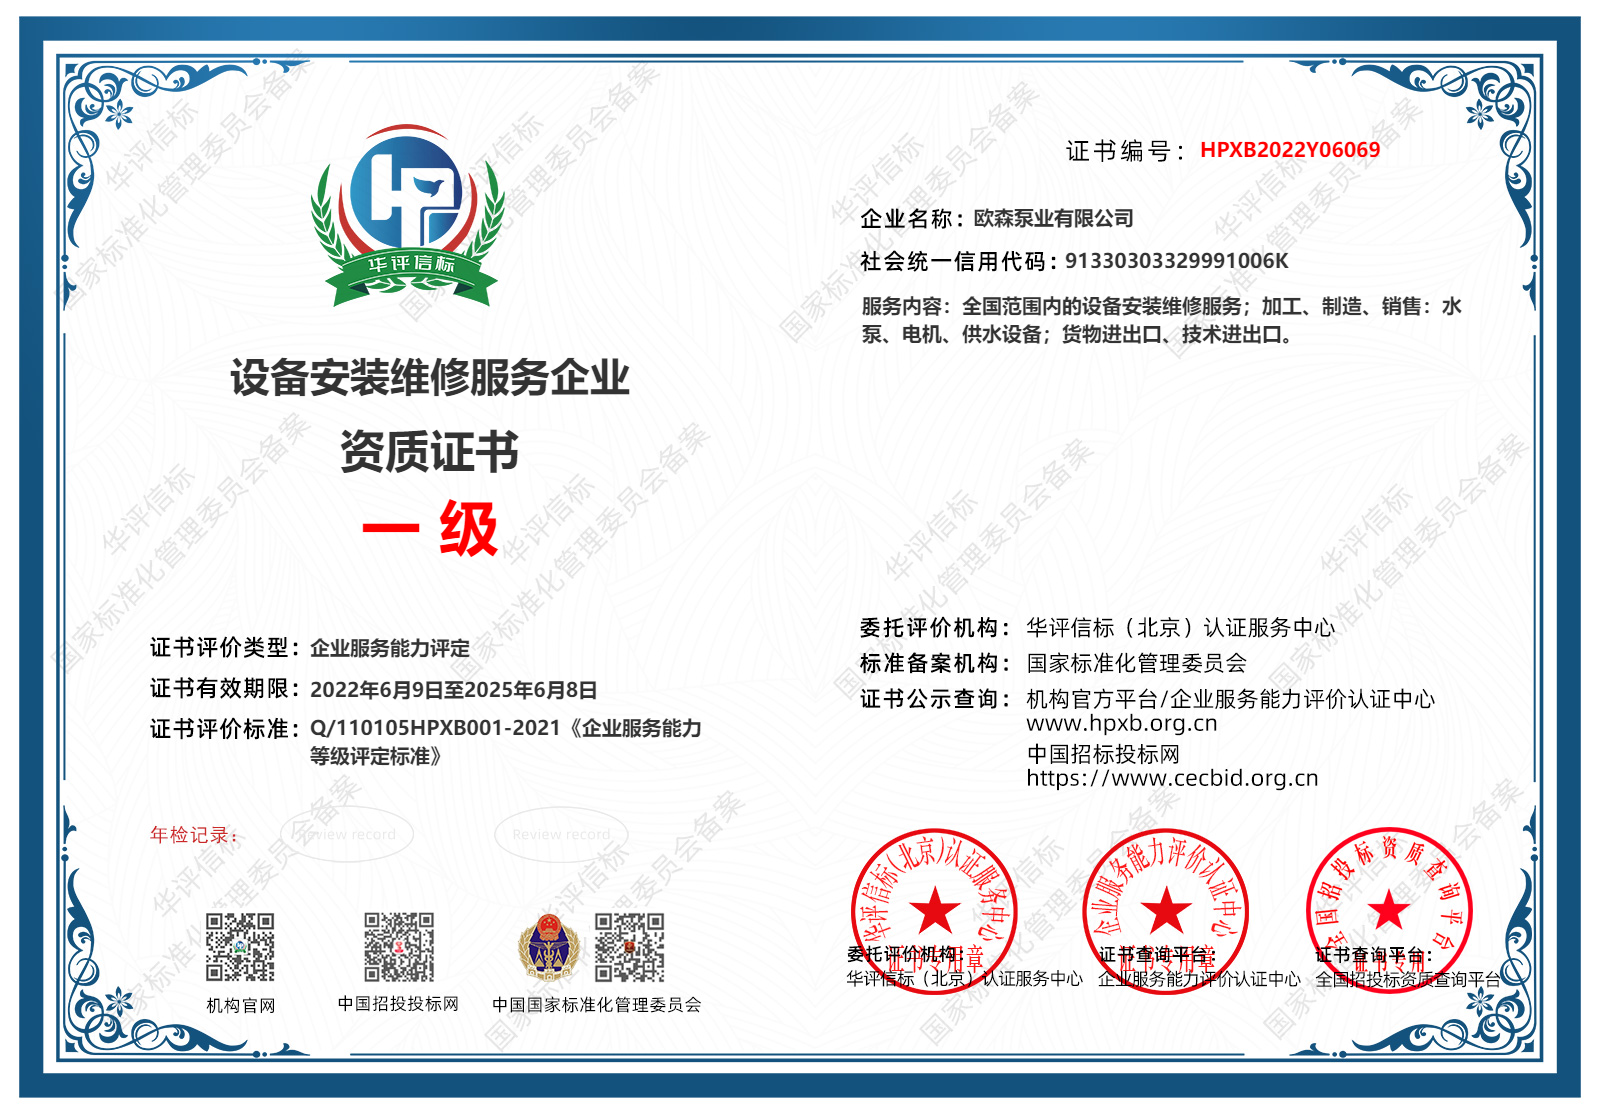 设备安装维修服务企业资质证书.png